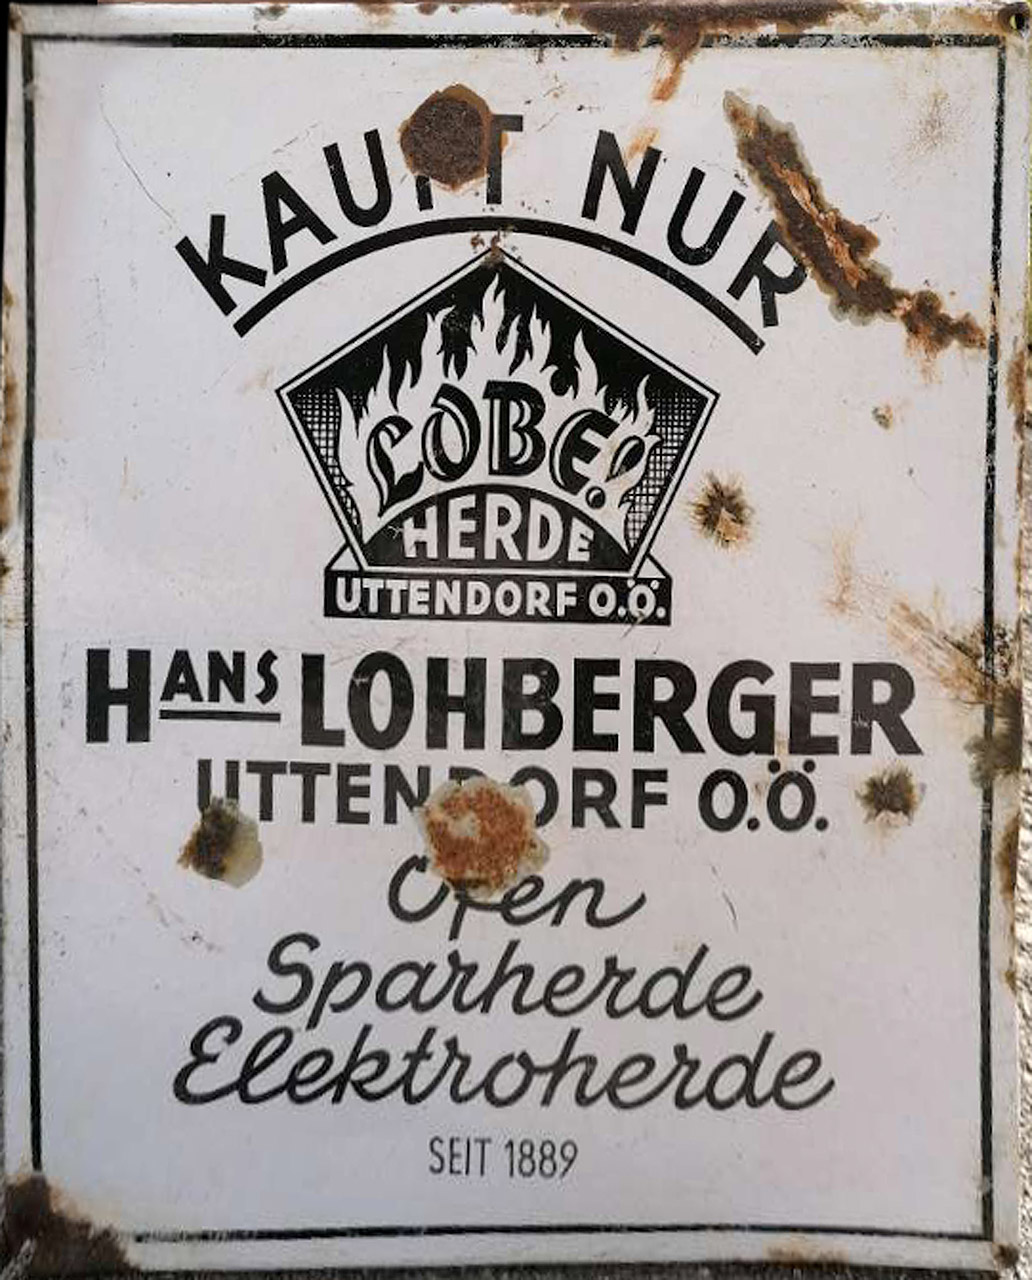 Lohberger Herde